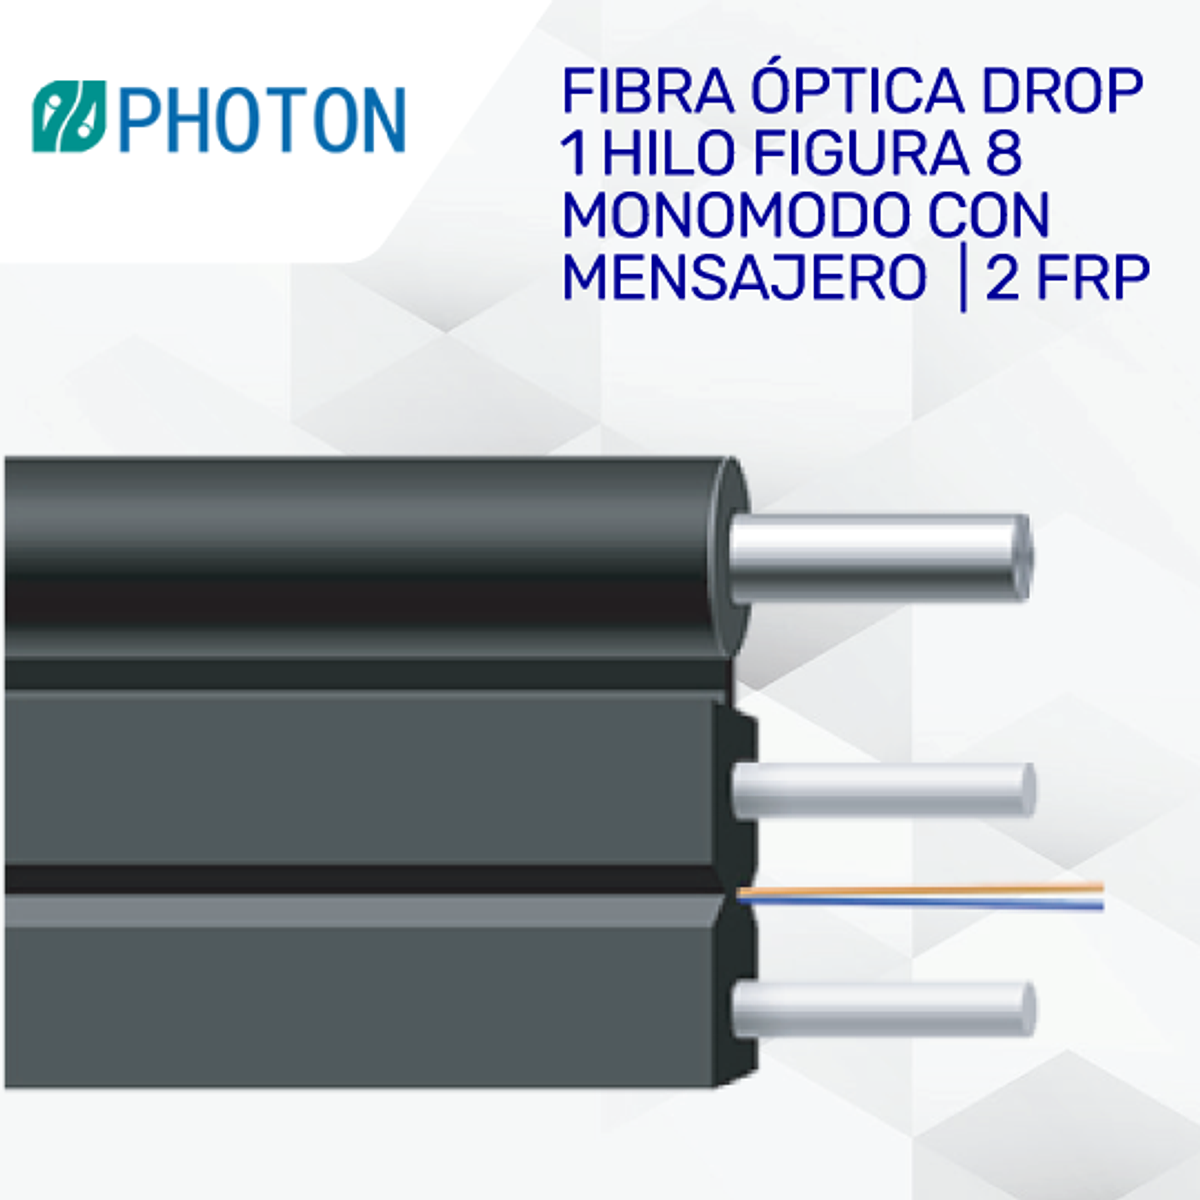 Fibra óptica drop de 1 hilo figura 8 monomodo G.657. A1